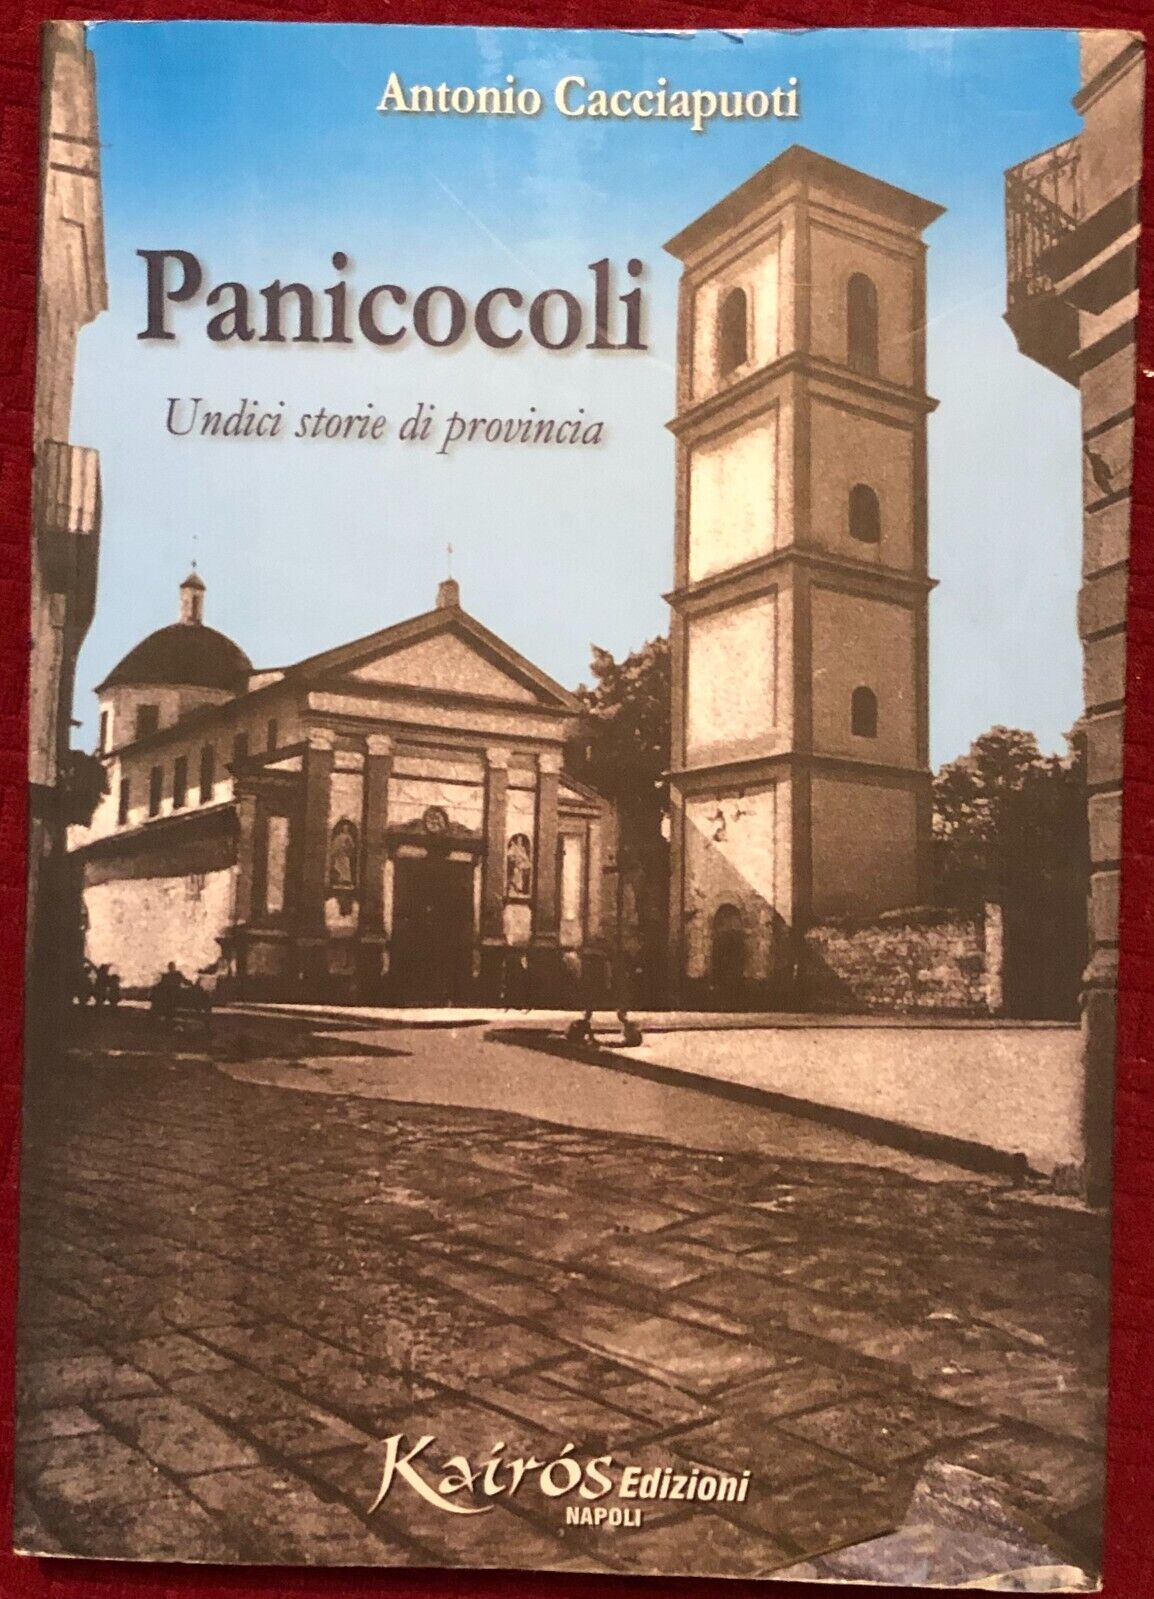 Panicocoli. Undici storie di provincia di Antonio Cacciapuoti,  2006,  Kairos Ed